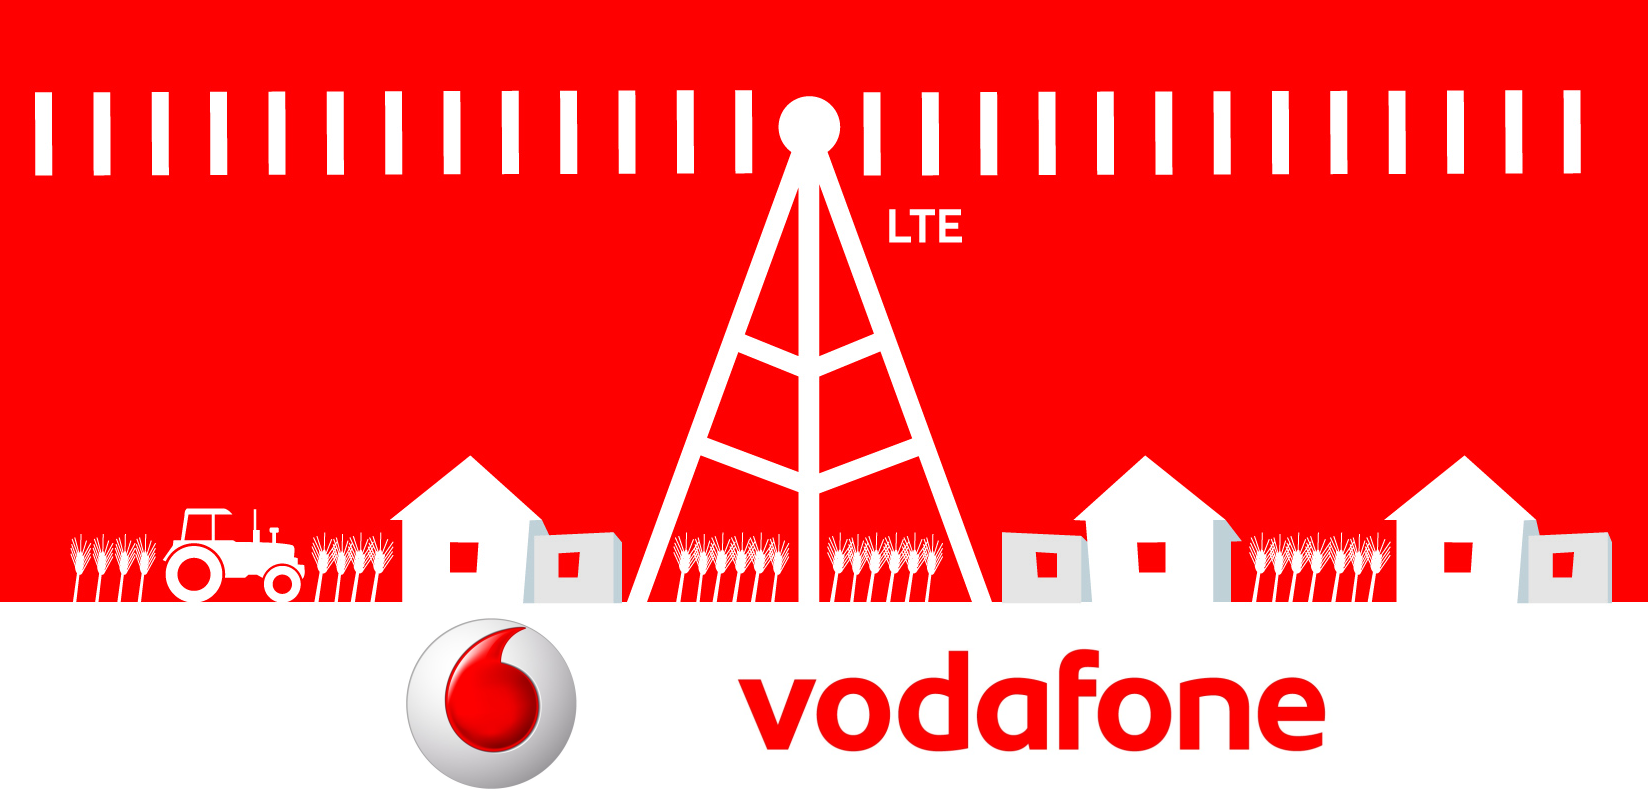 Vodafone Senderliste Frequenzen